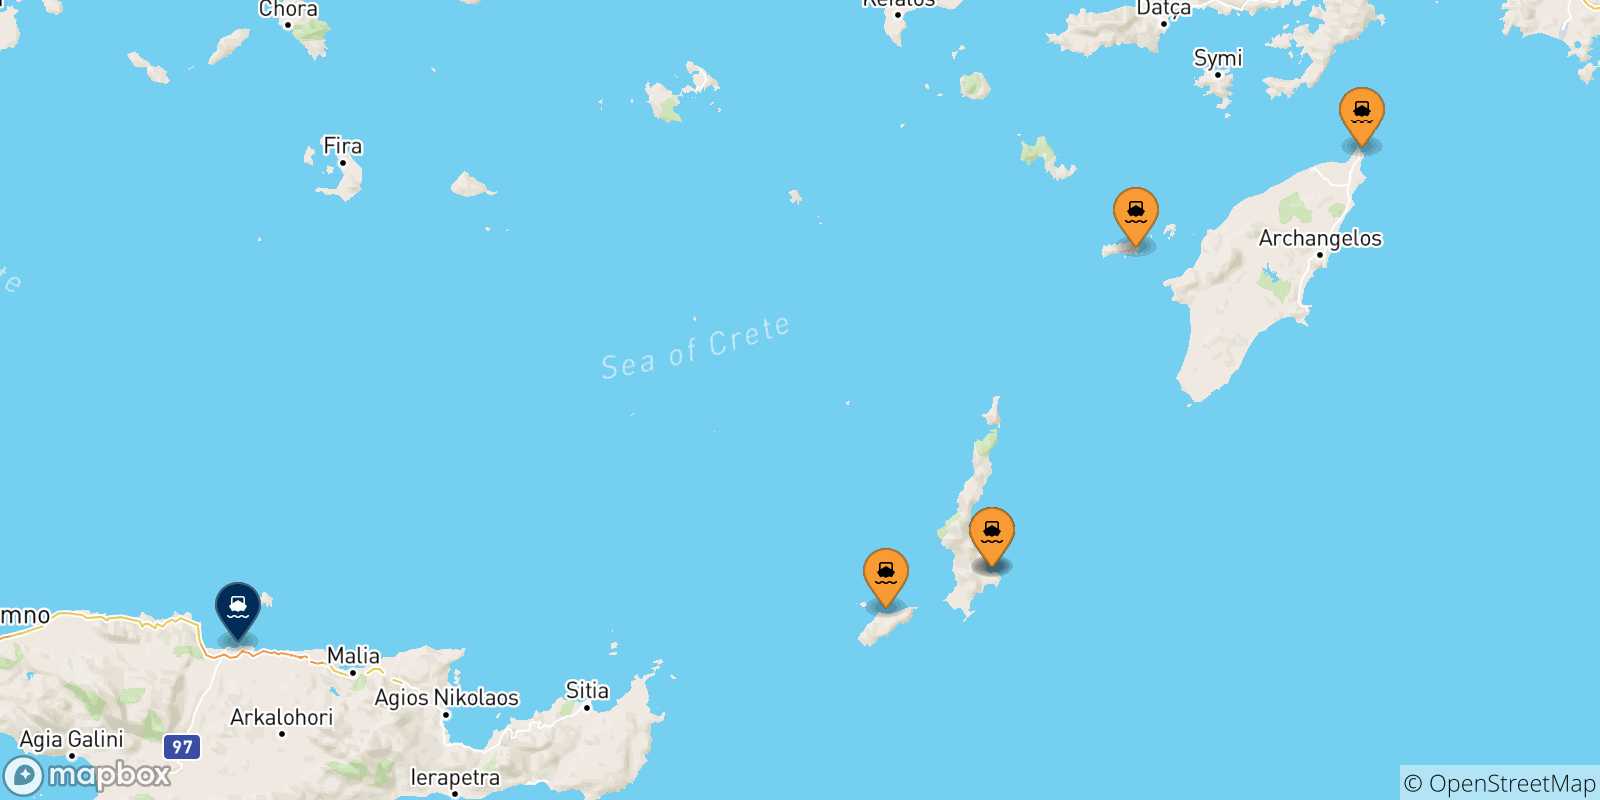 Mappa delle possibili rotte tra le Isole Dodecaneso e Heraklion